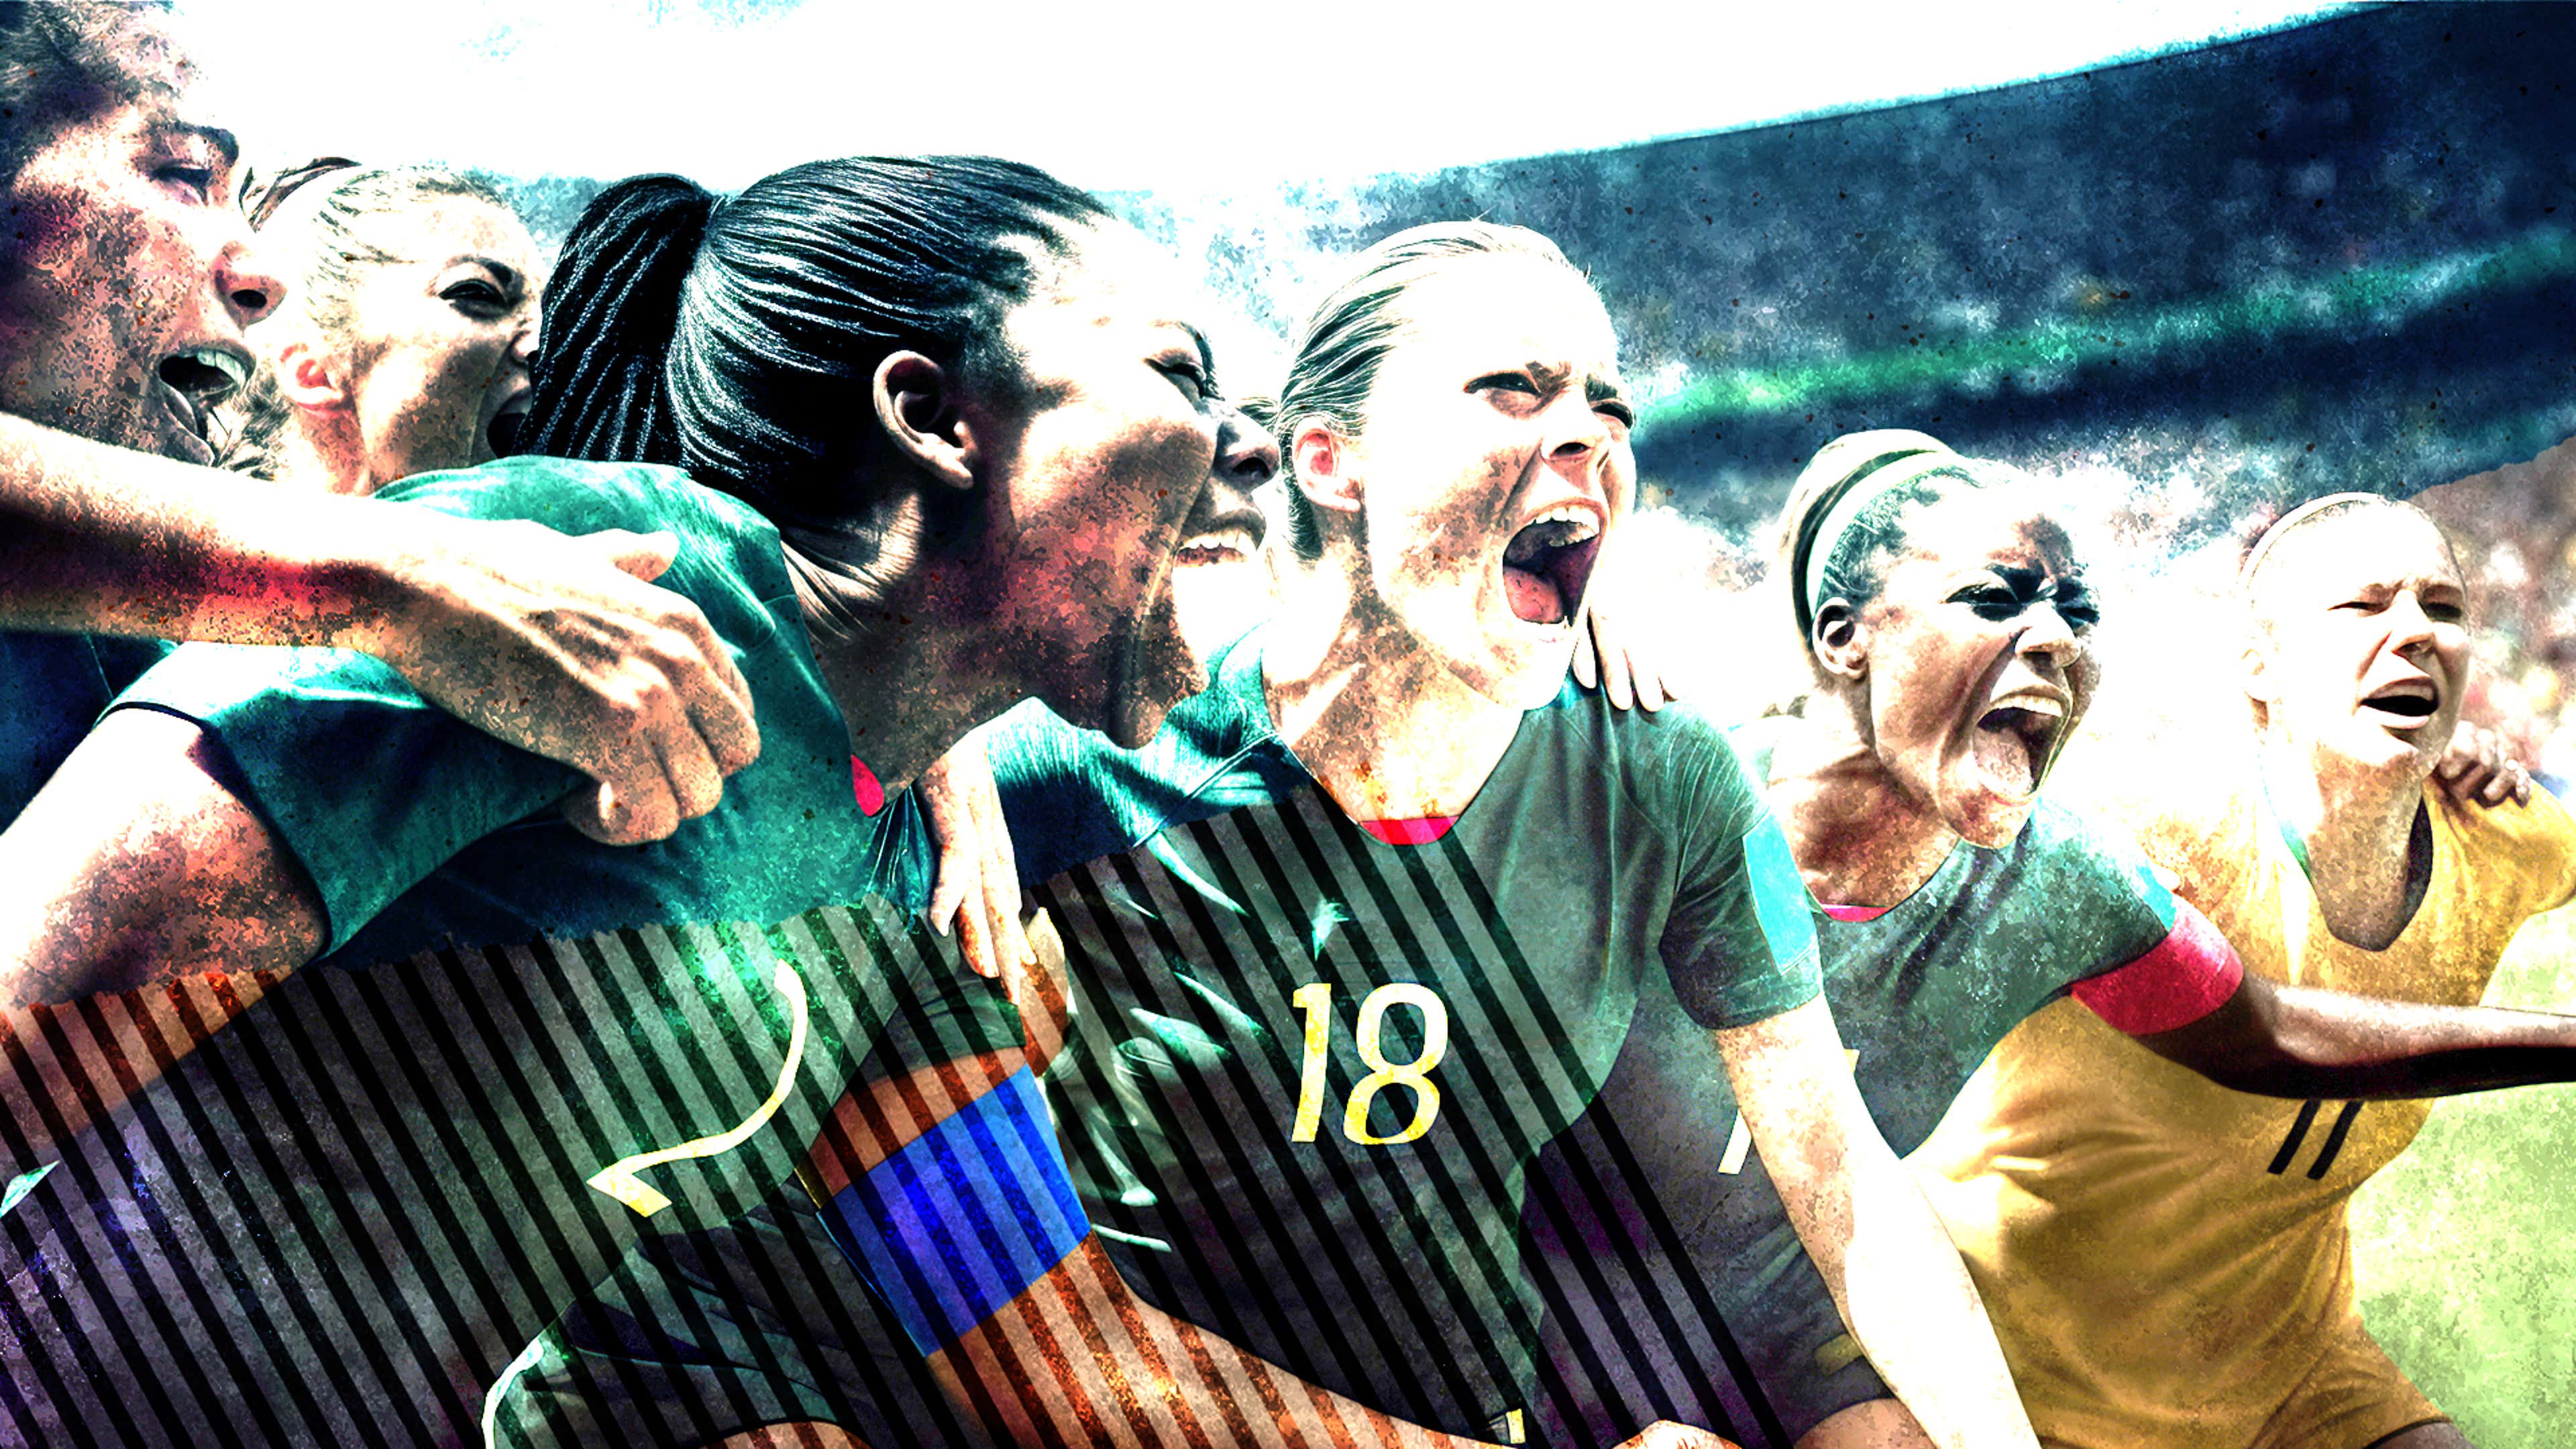 Copa feminina: Argentina e África do Sul empatam em jogo